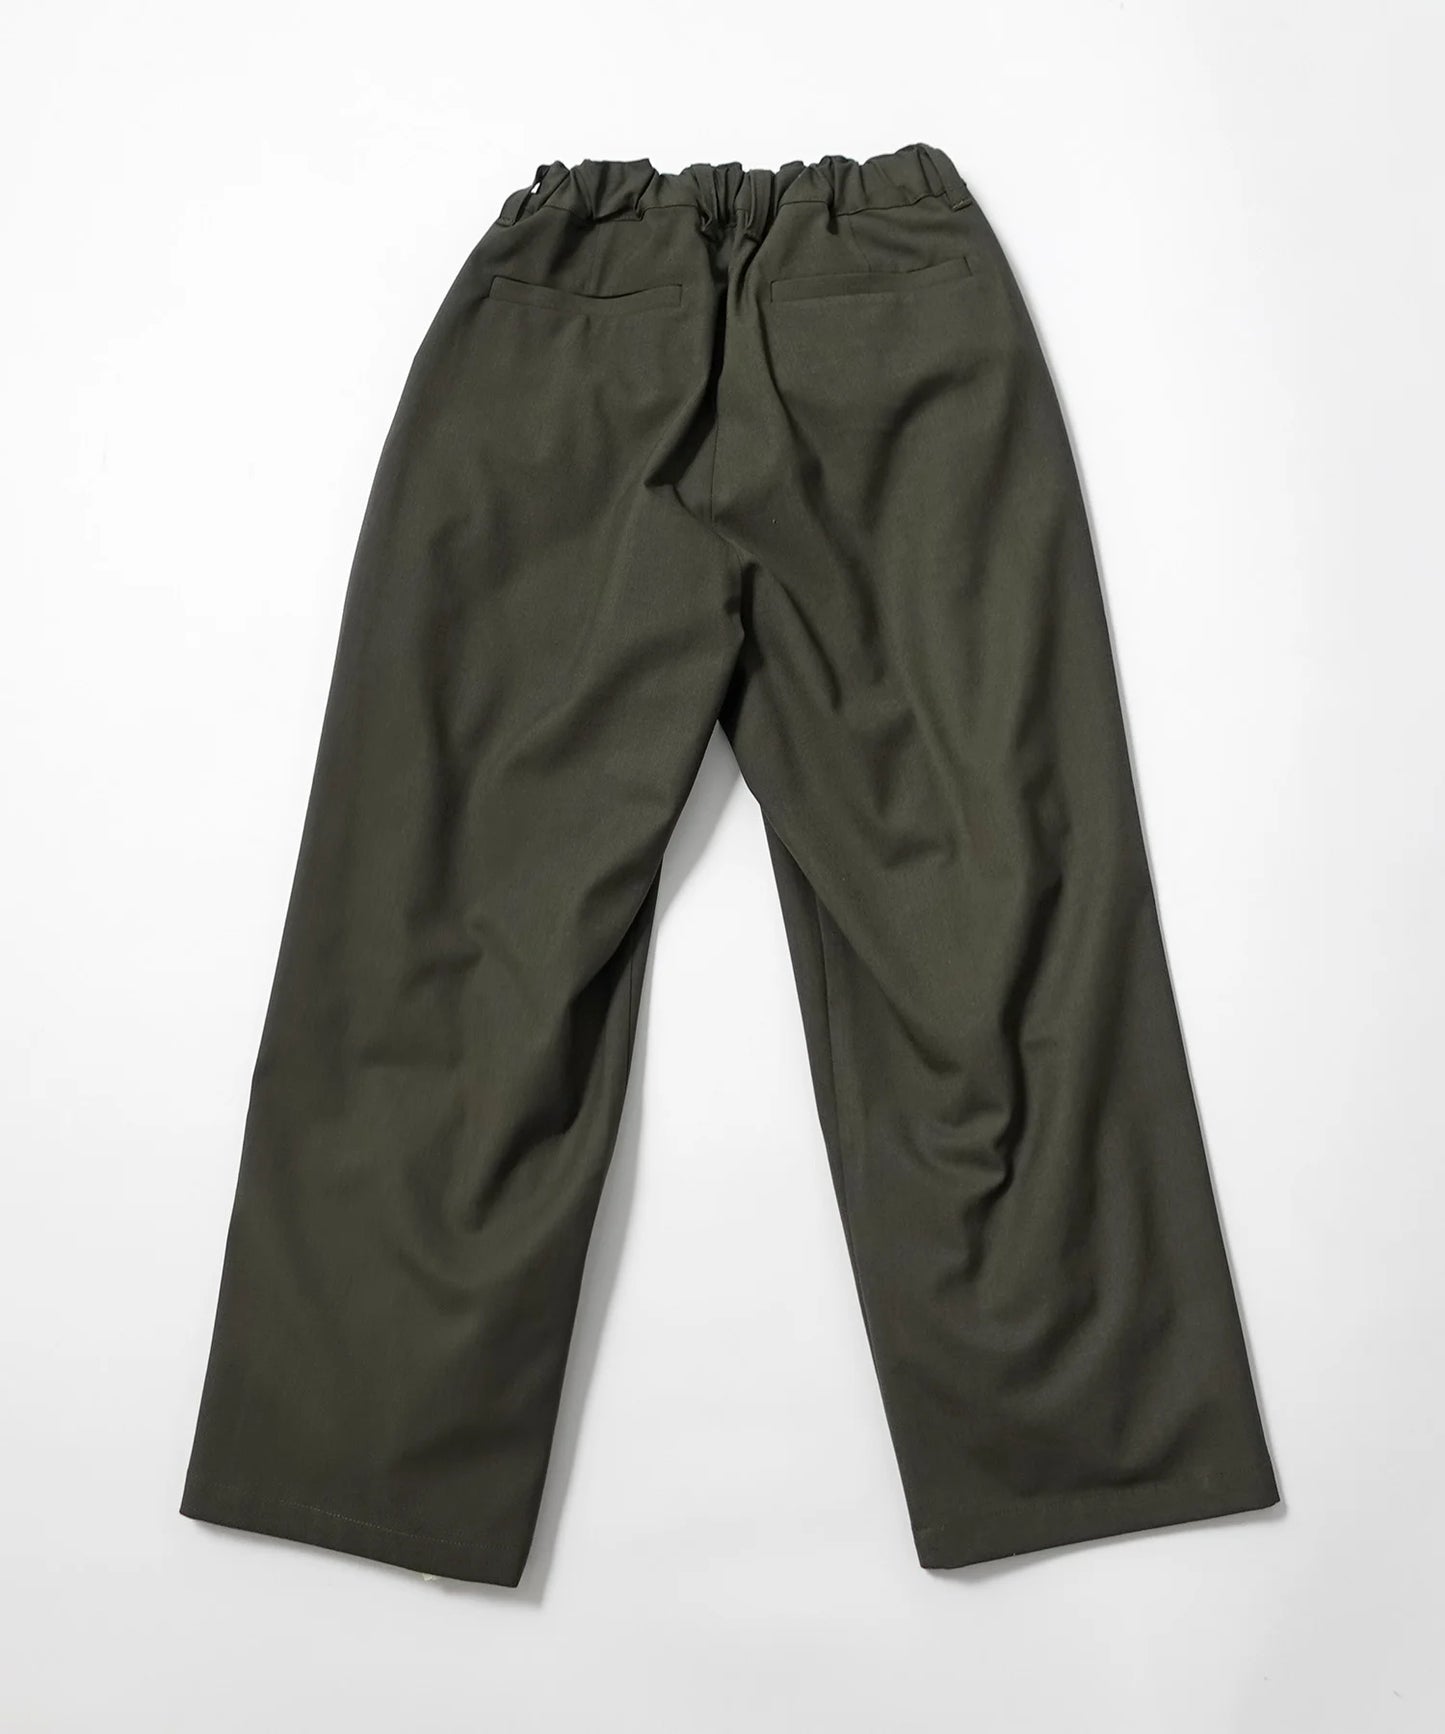 [環保材質] B GREEN CREW PANTS 上下皆可使用 再生聚酯纖維 [100-145cm]